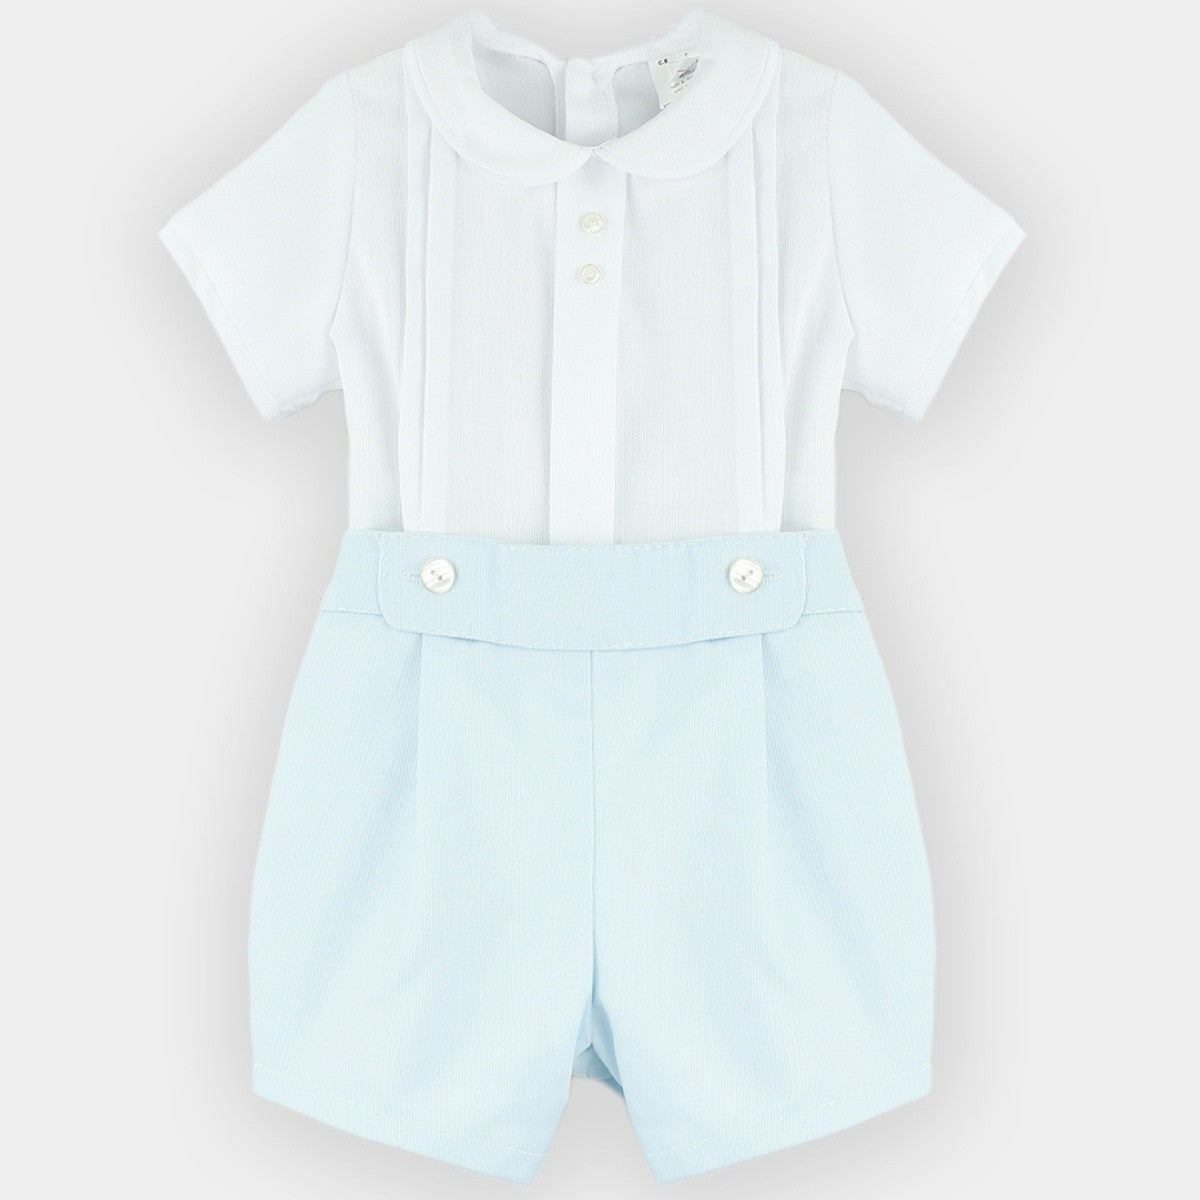 Babyferr baby blue shorts & shirt set